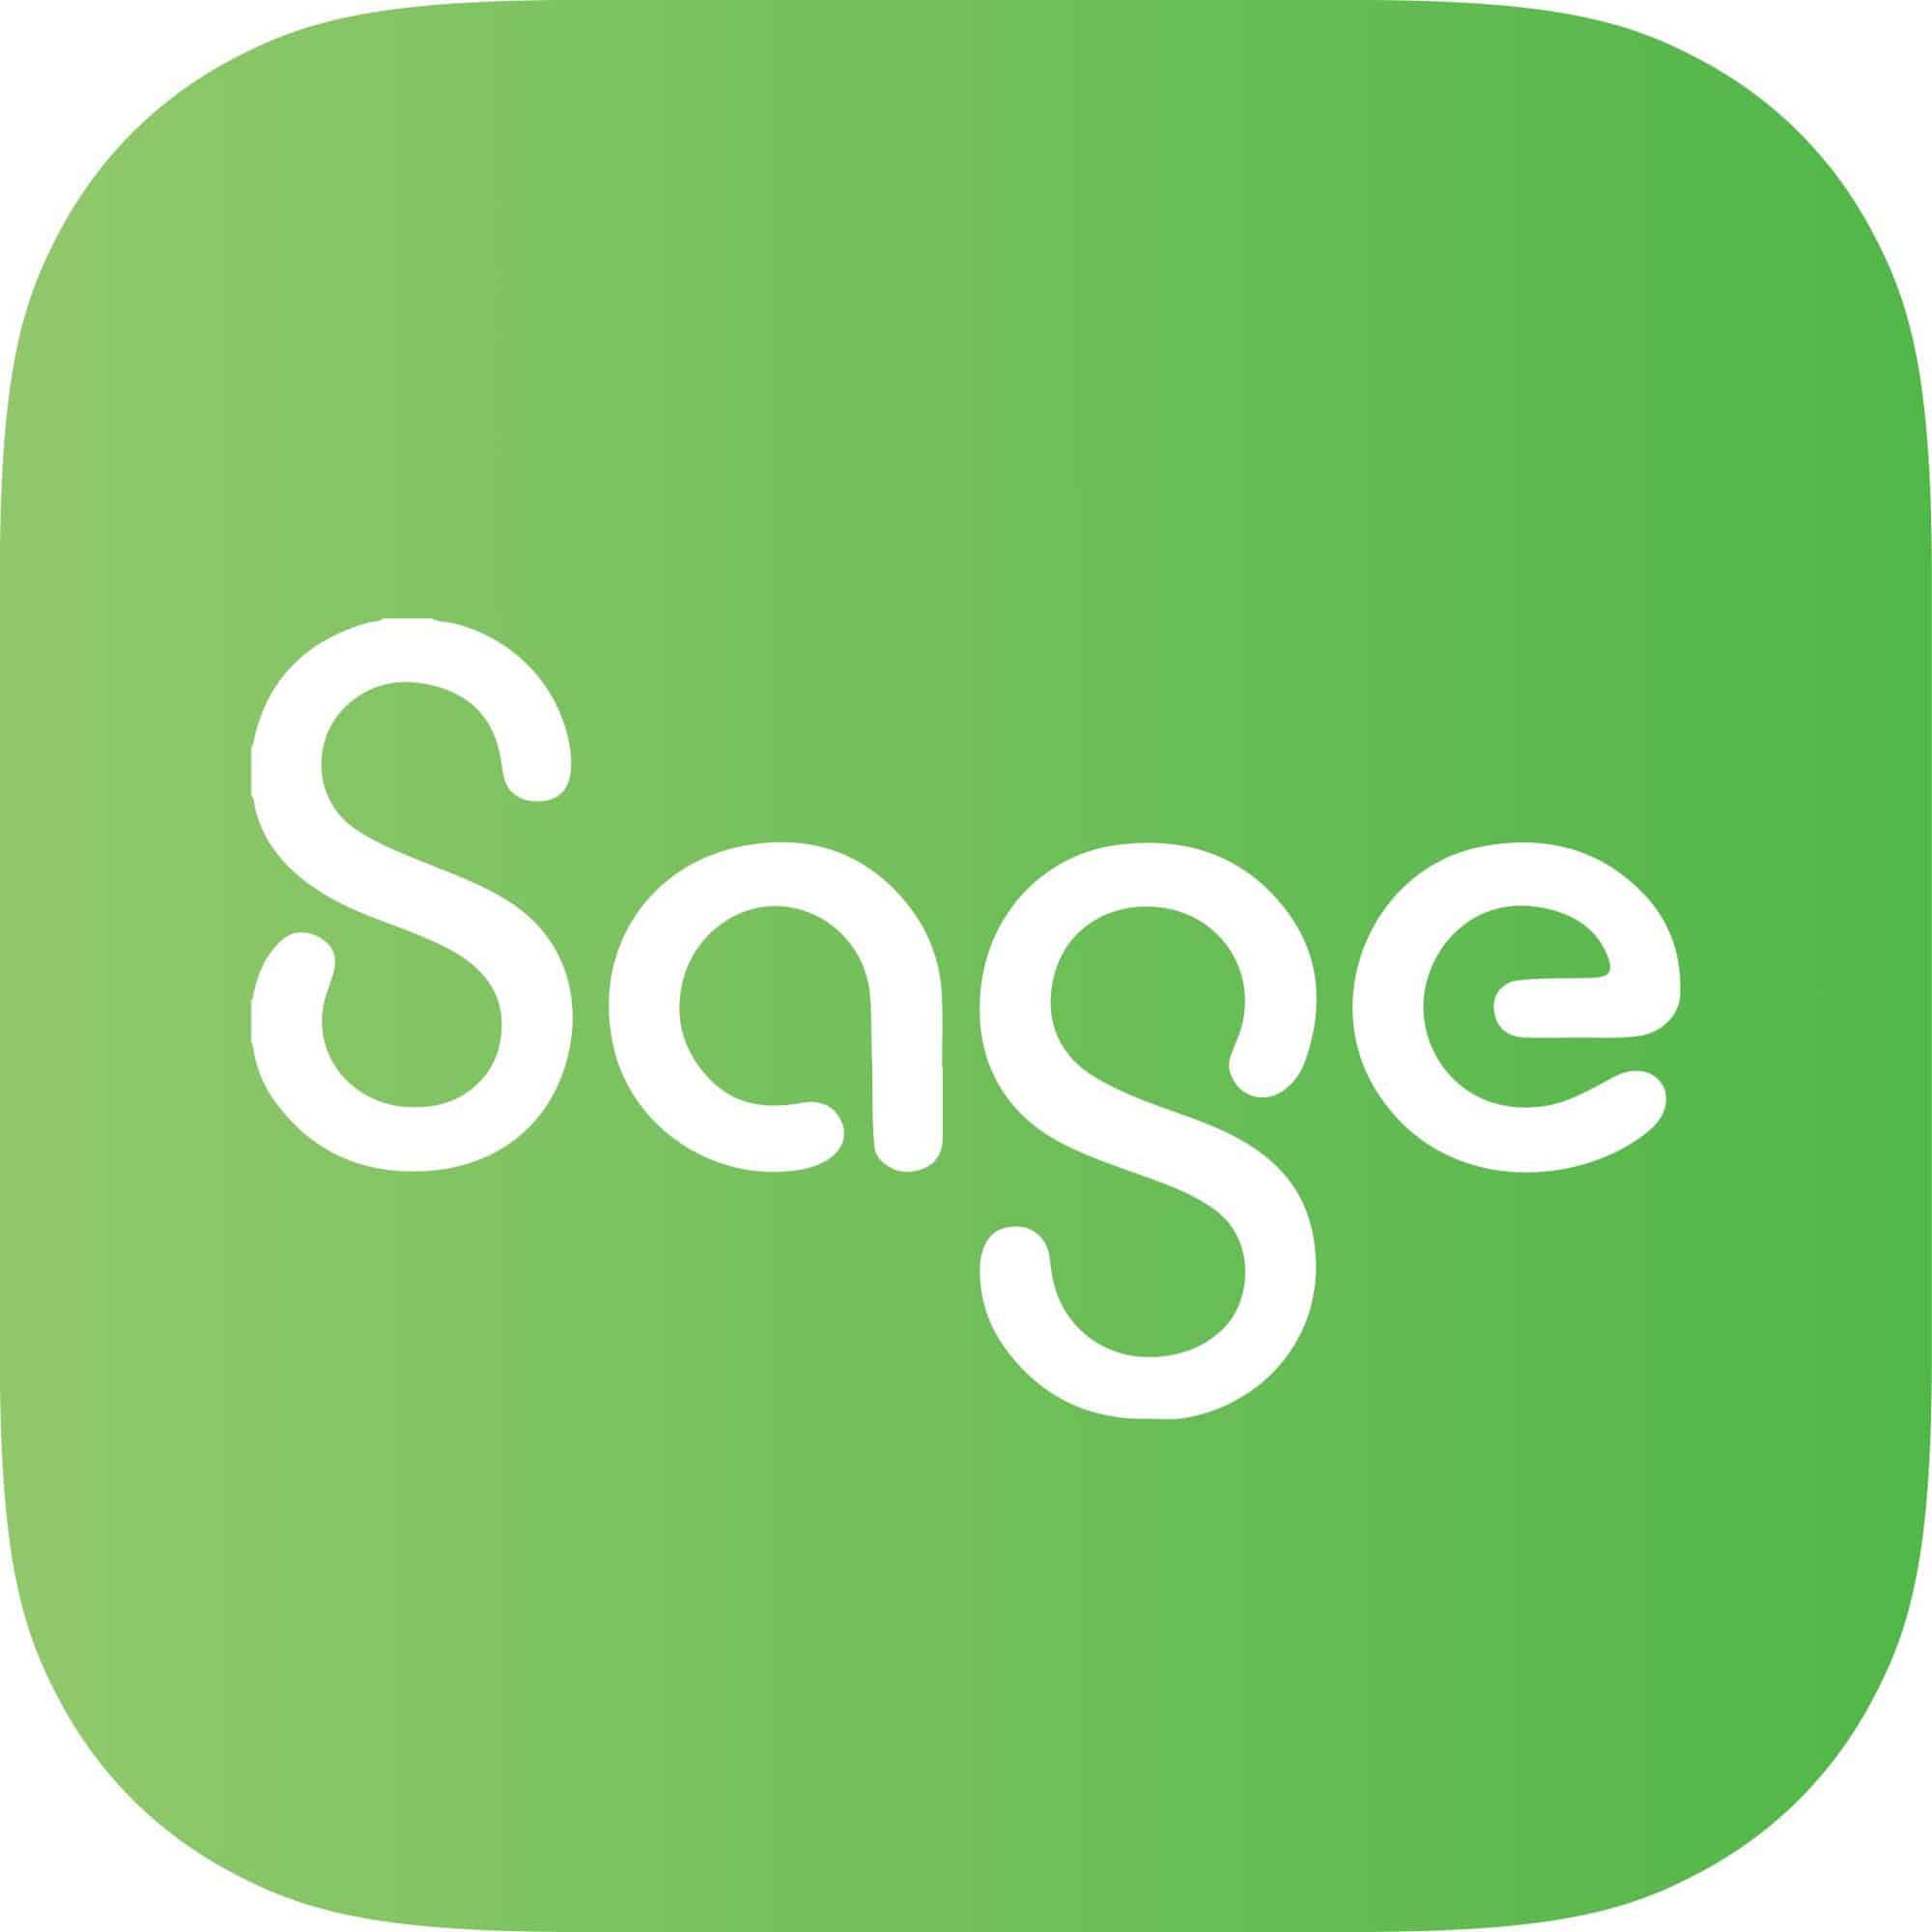 Sage 100 logo icon